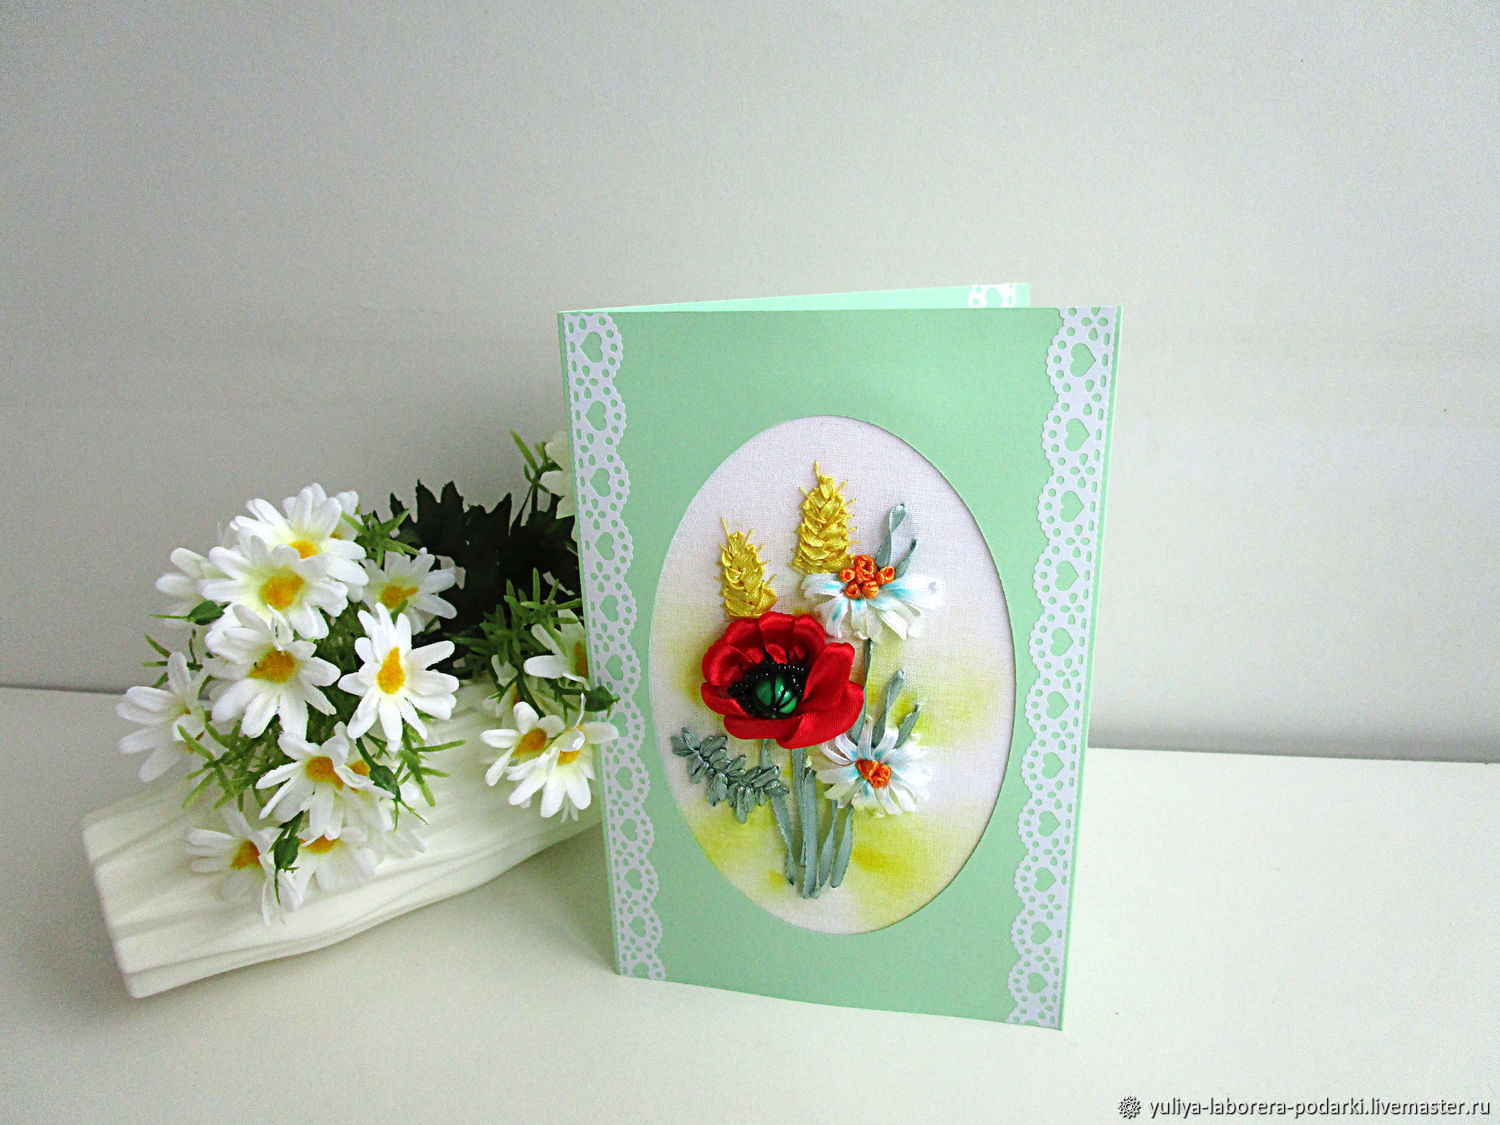 Greeting card with a poppy ' Field bouquet', Cards, Nizhny Novgorod,  Фото №1